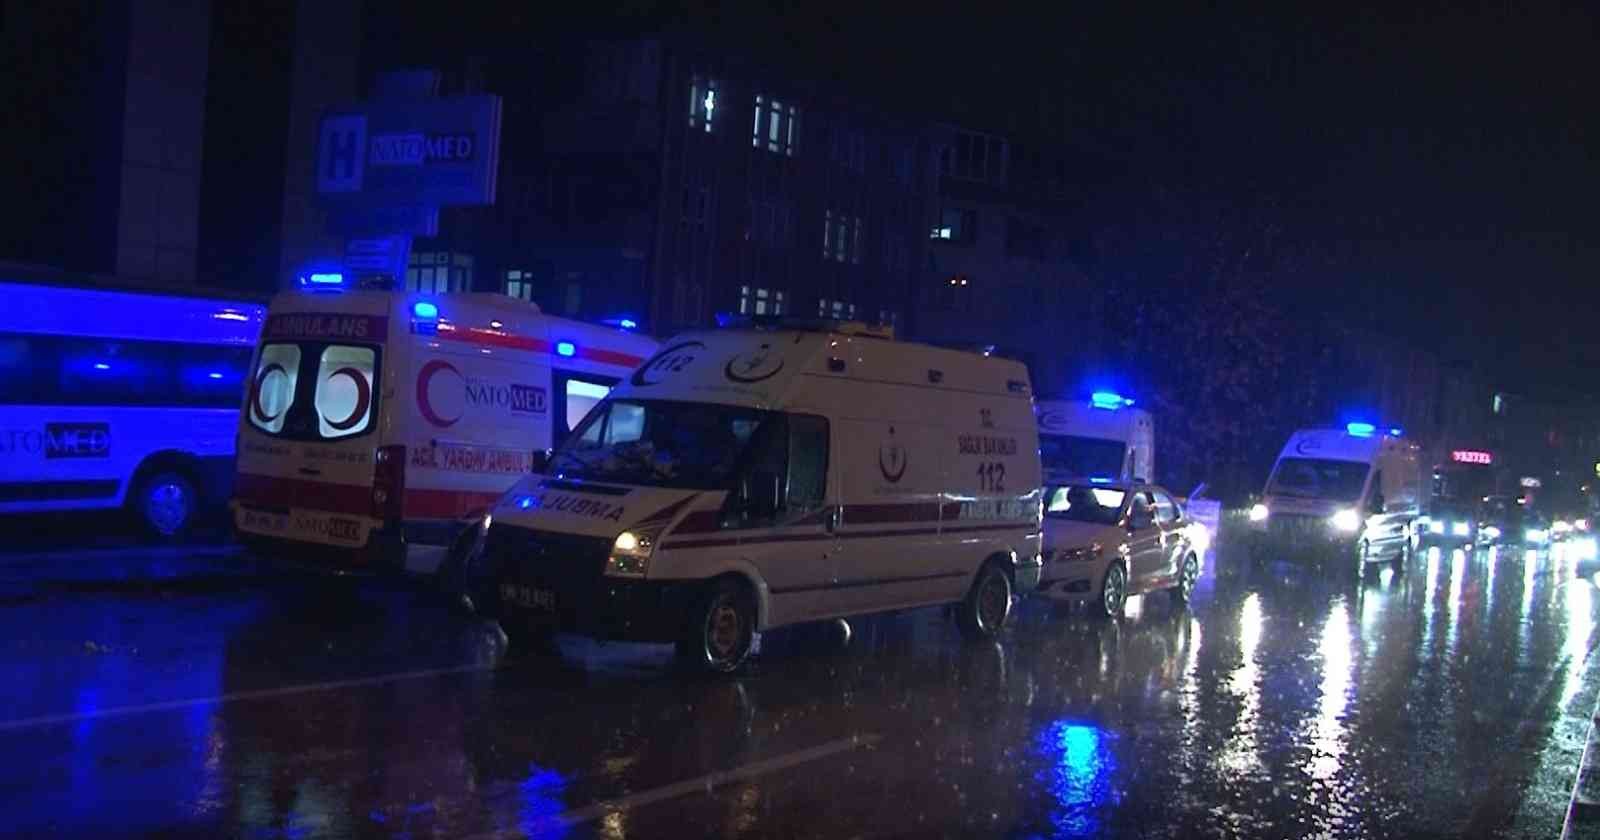 Başkent’te özel bir hastanede çıkan yangın nedeniyle 17 hasta tahliye edildi #ankara